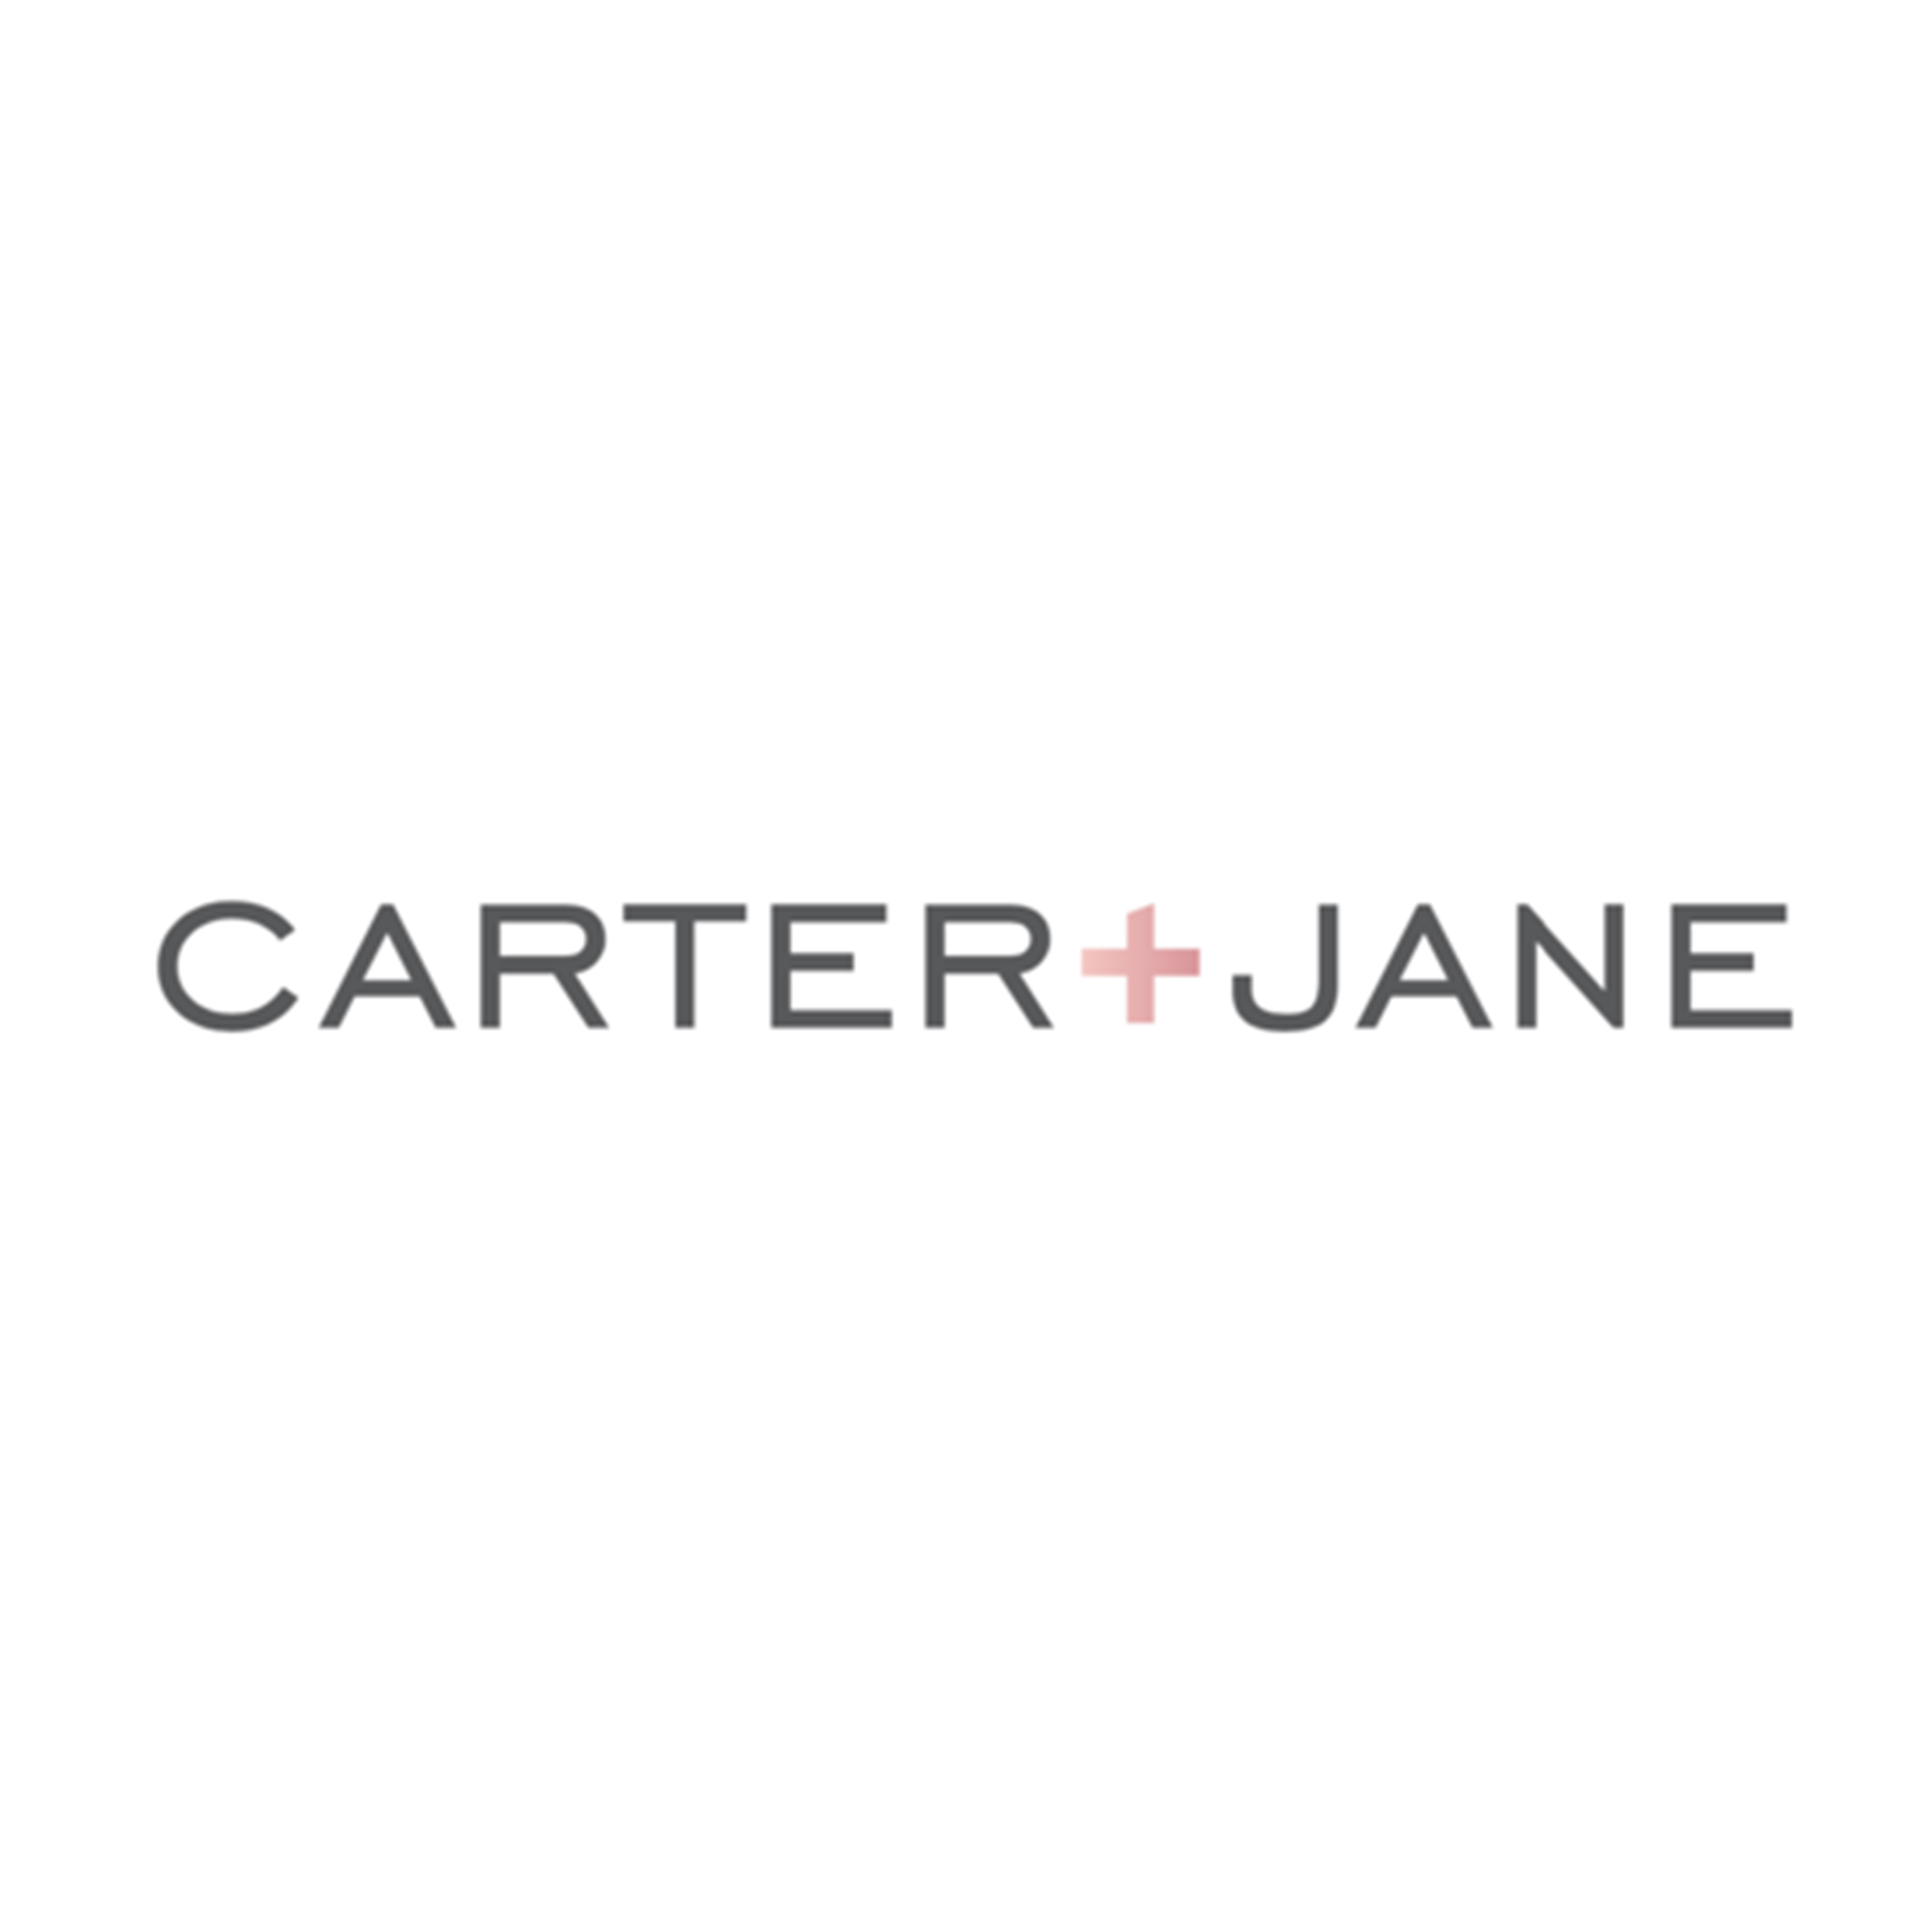 Carter + Jane logo